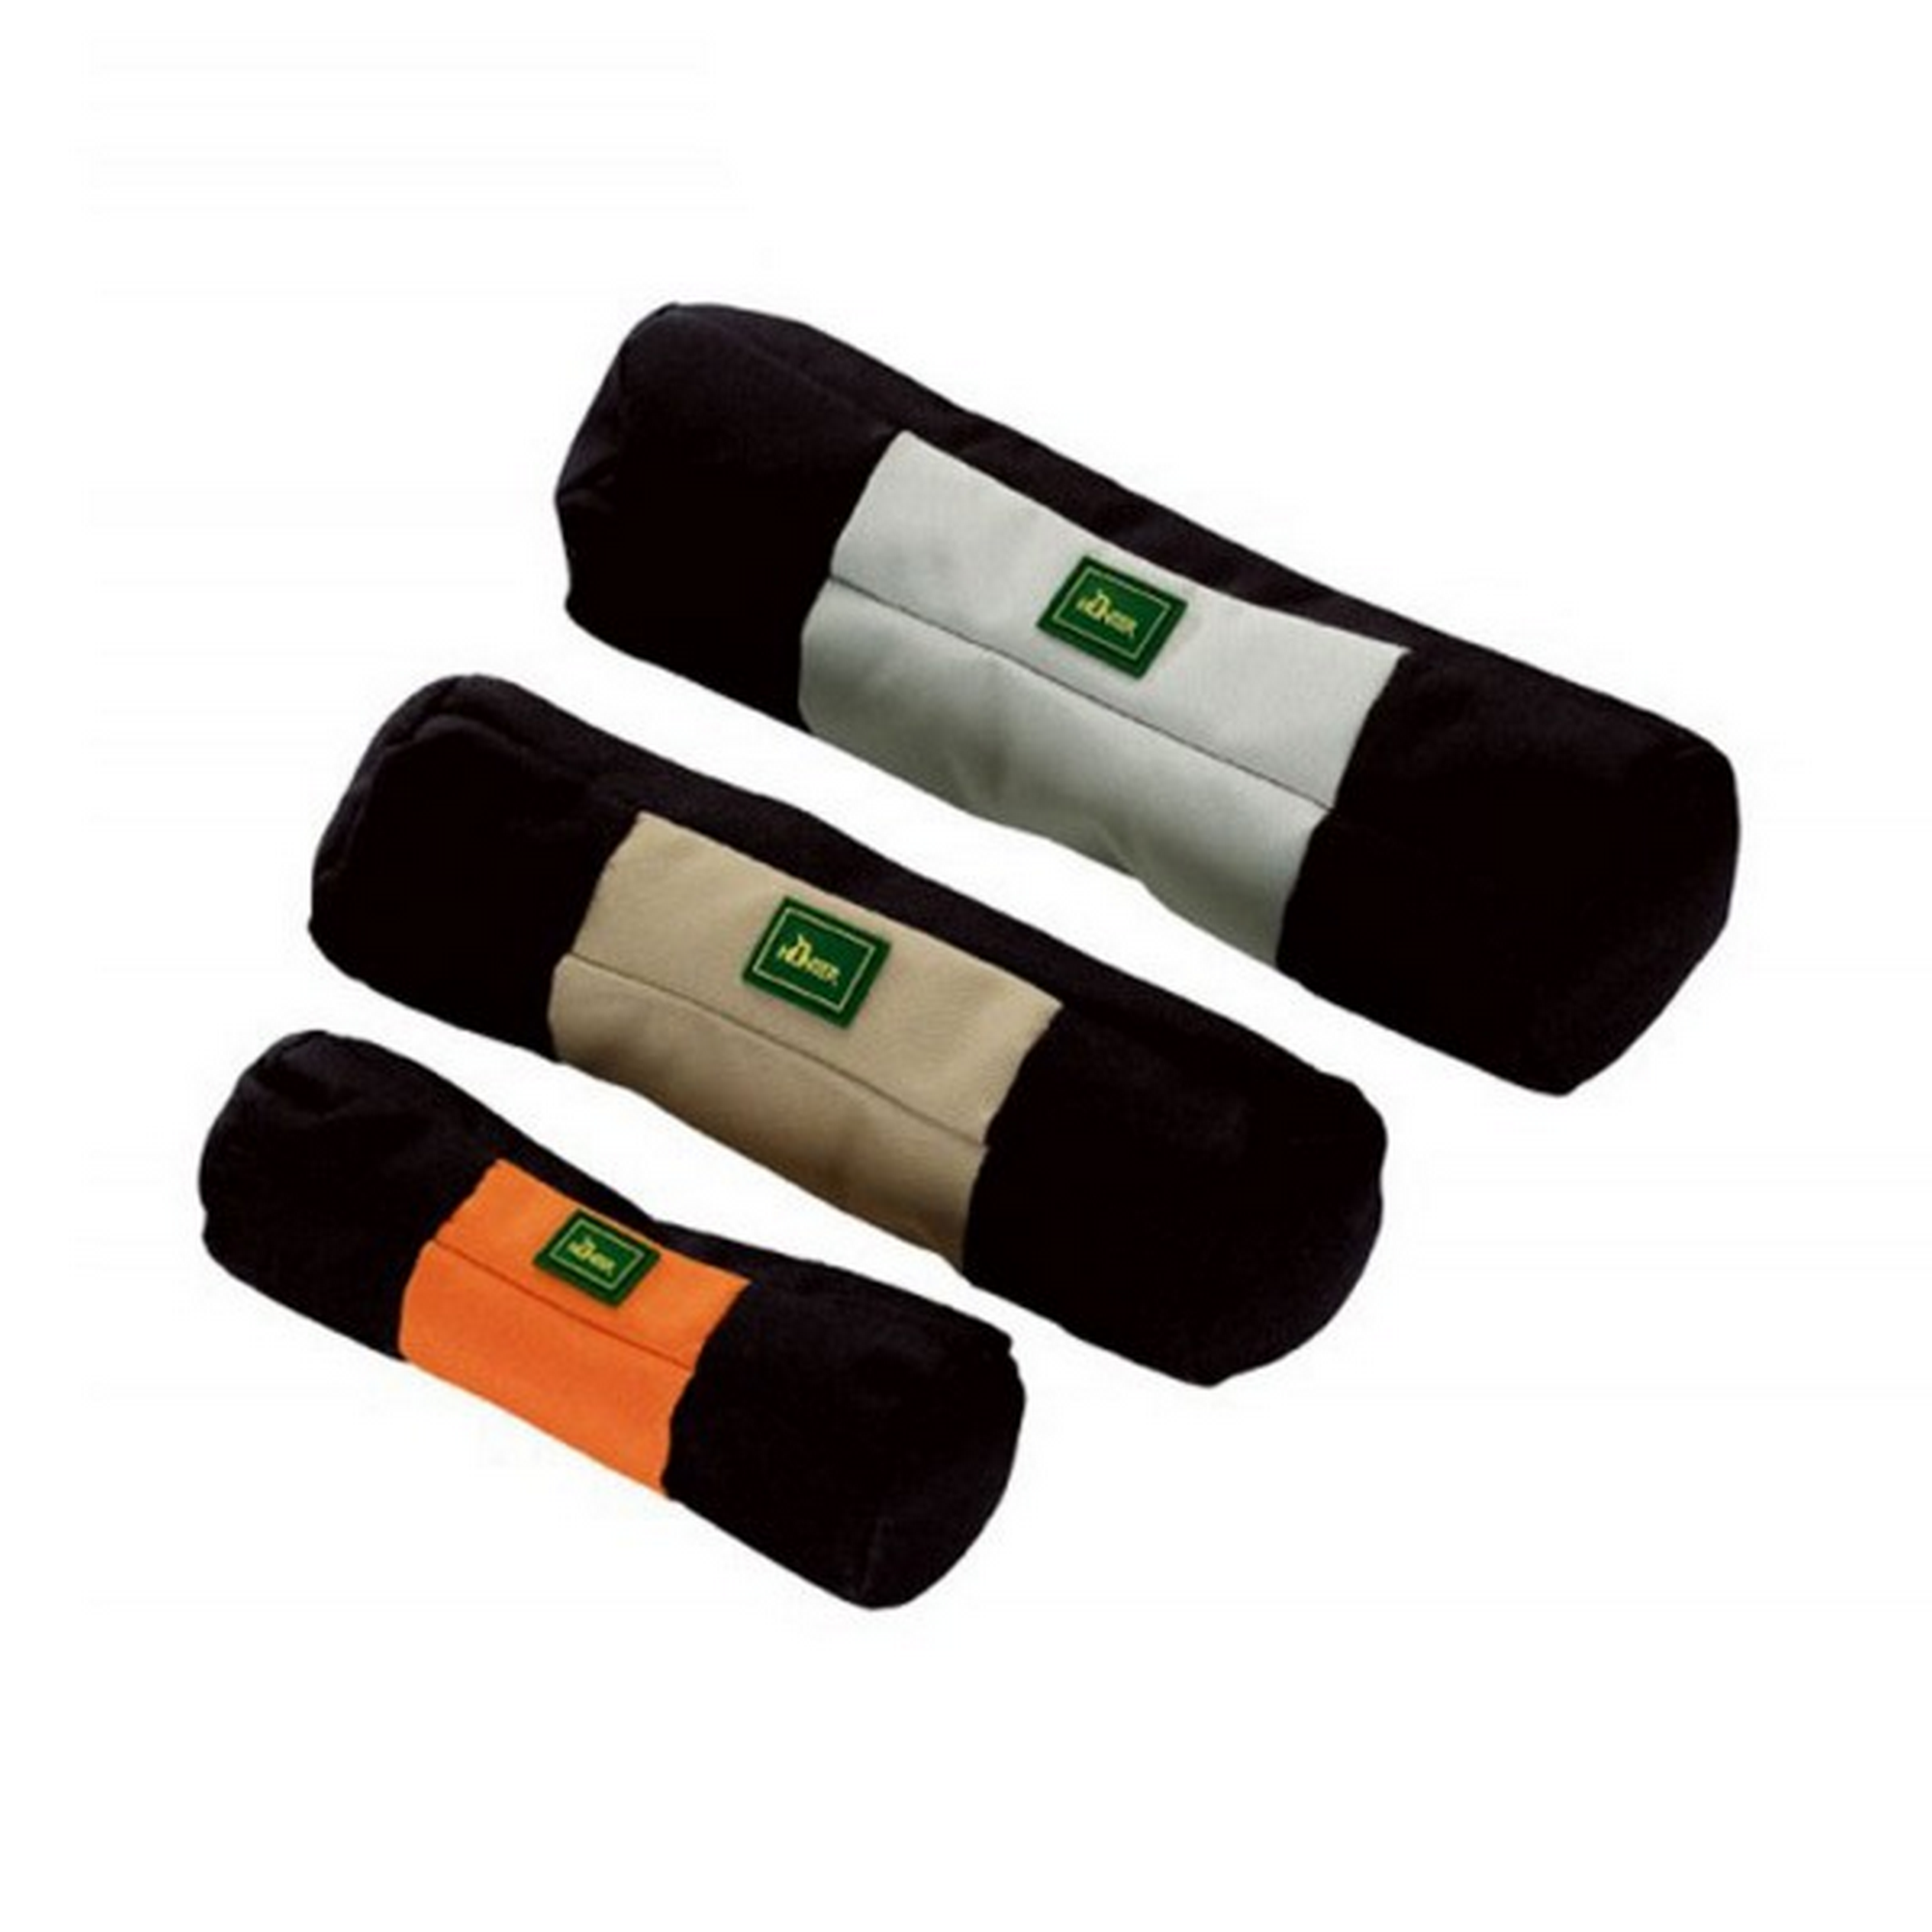 Hunde-Trainingsdummy zum Befüllen, Größe S, 150 mm, schwarz/orange + product picture